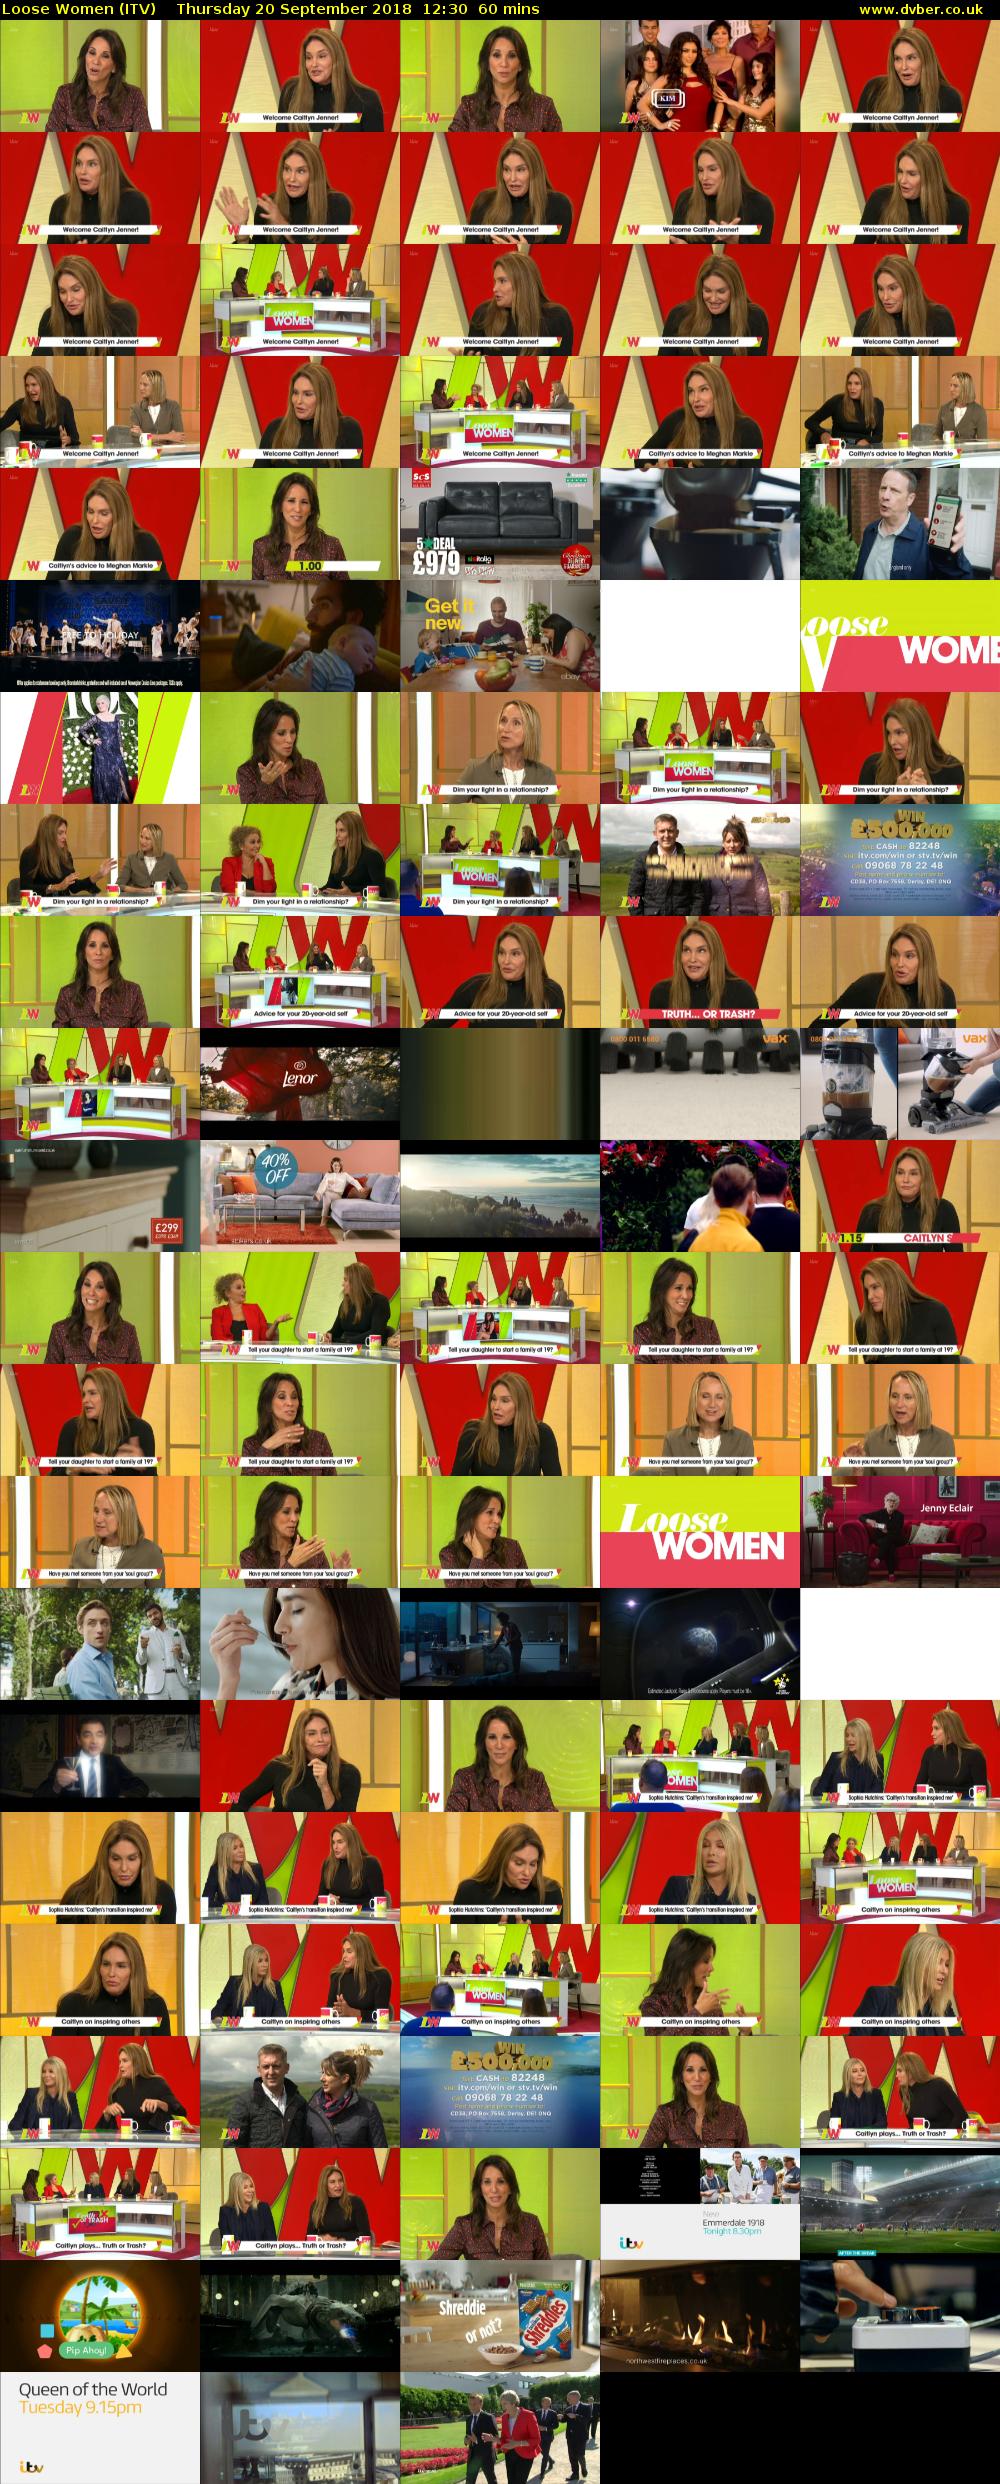 Loose Women (ITV) Thursday 20 September 2018 12:30 - 13:30